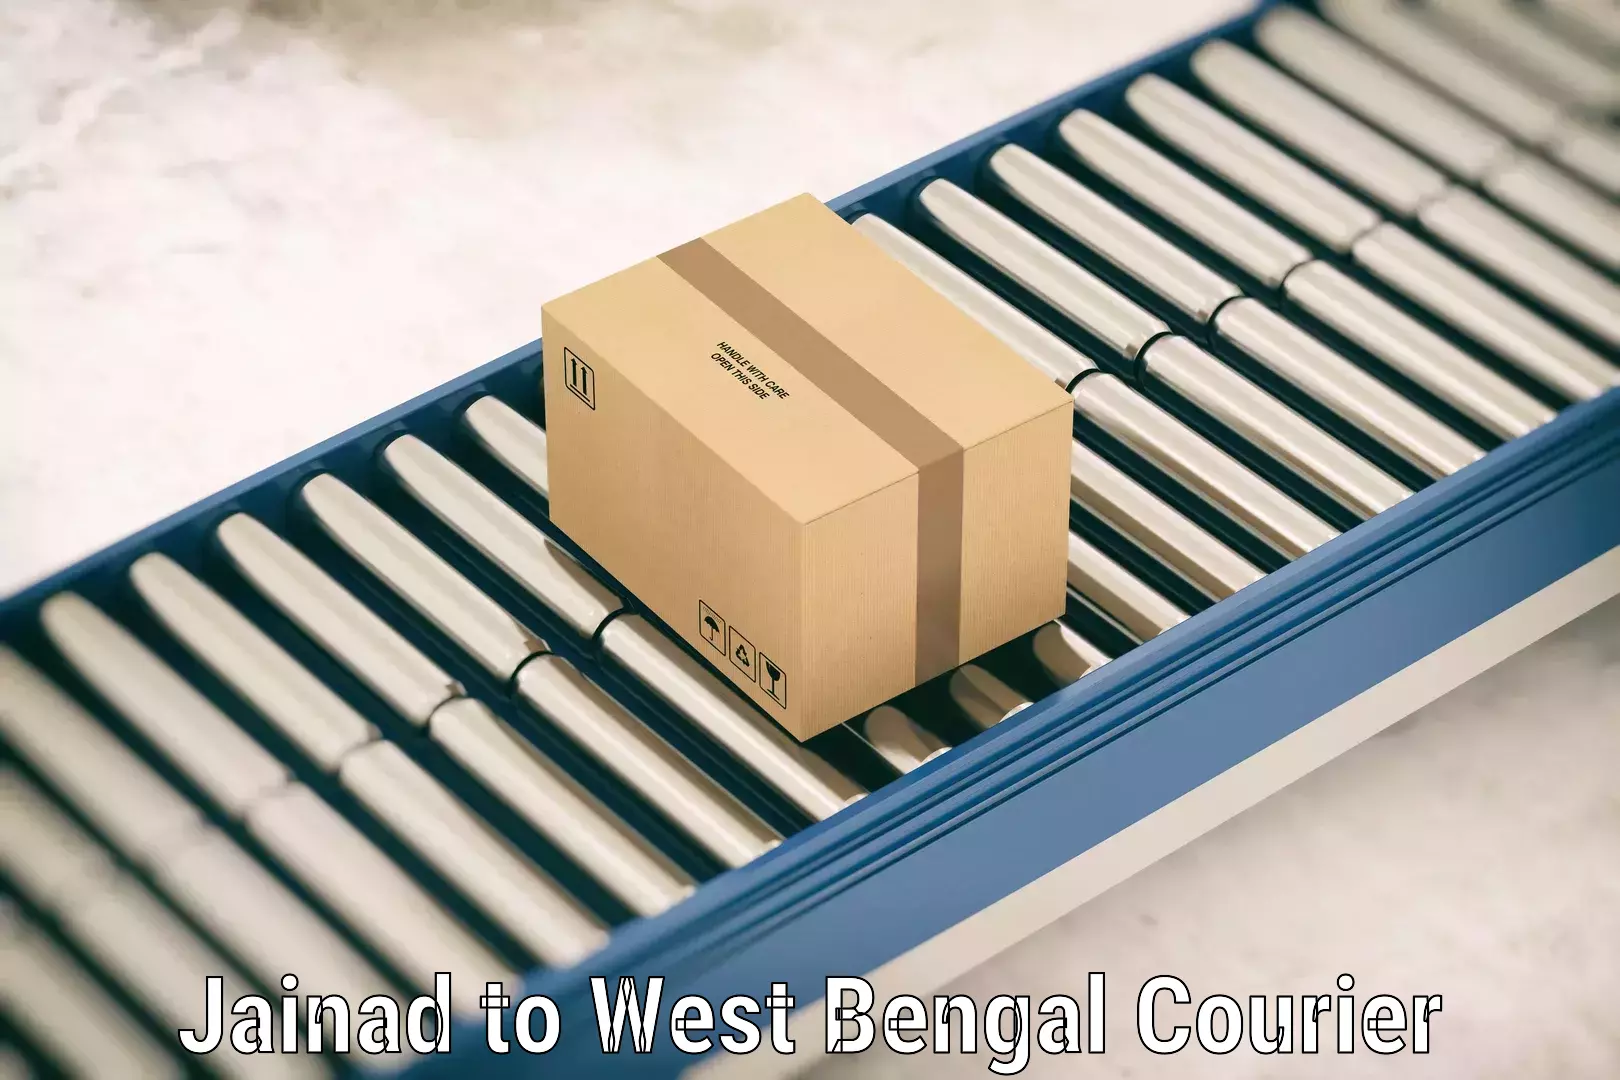 Door-to-door baggage service Jainad to West Bengal